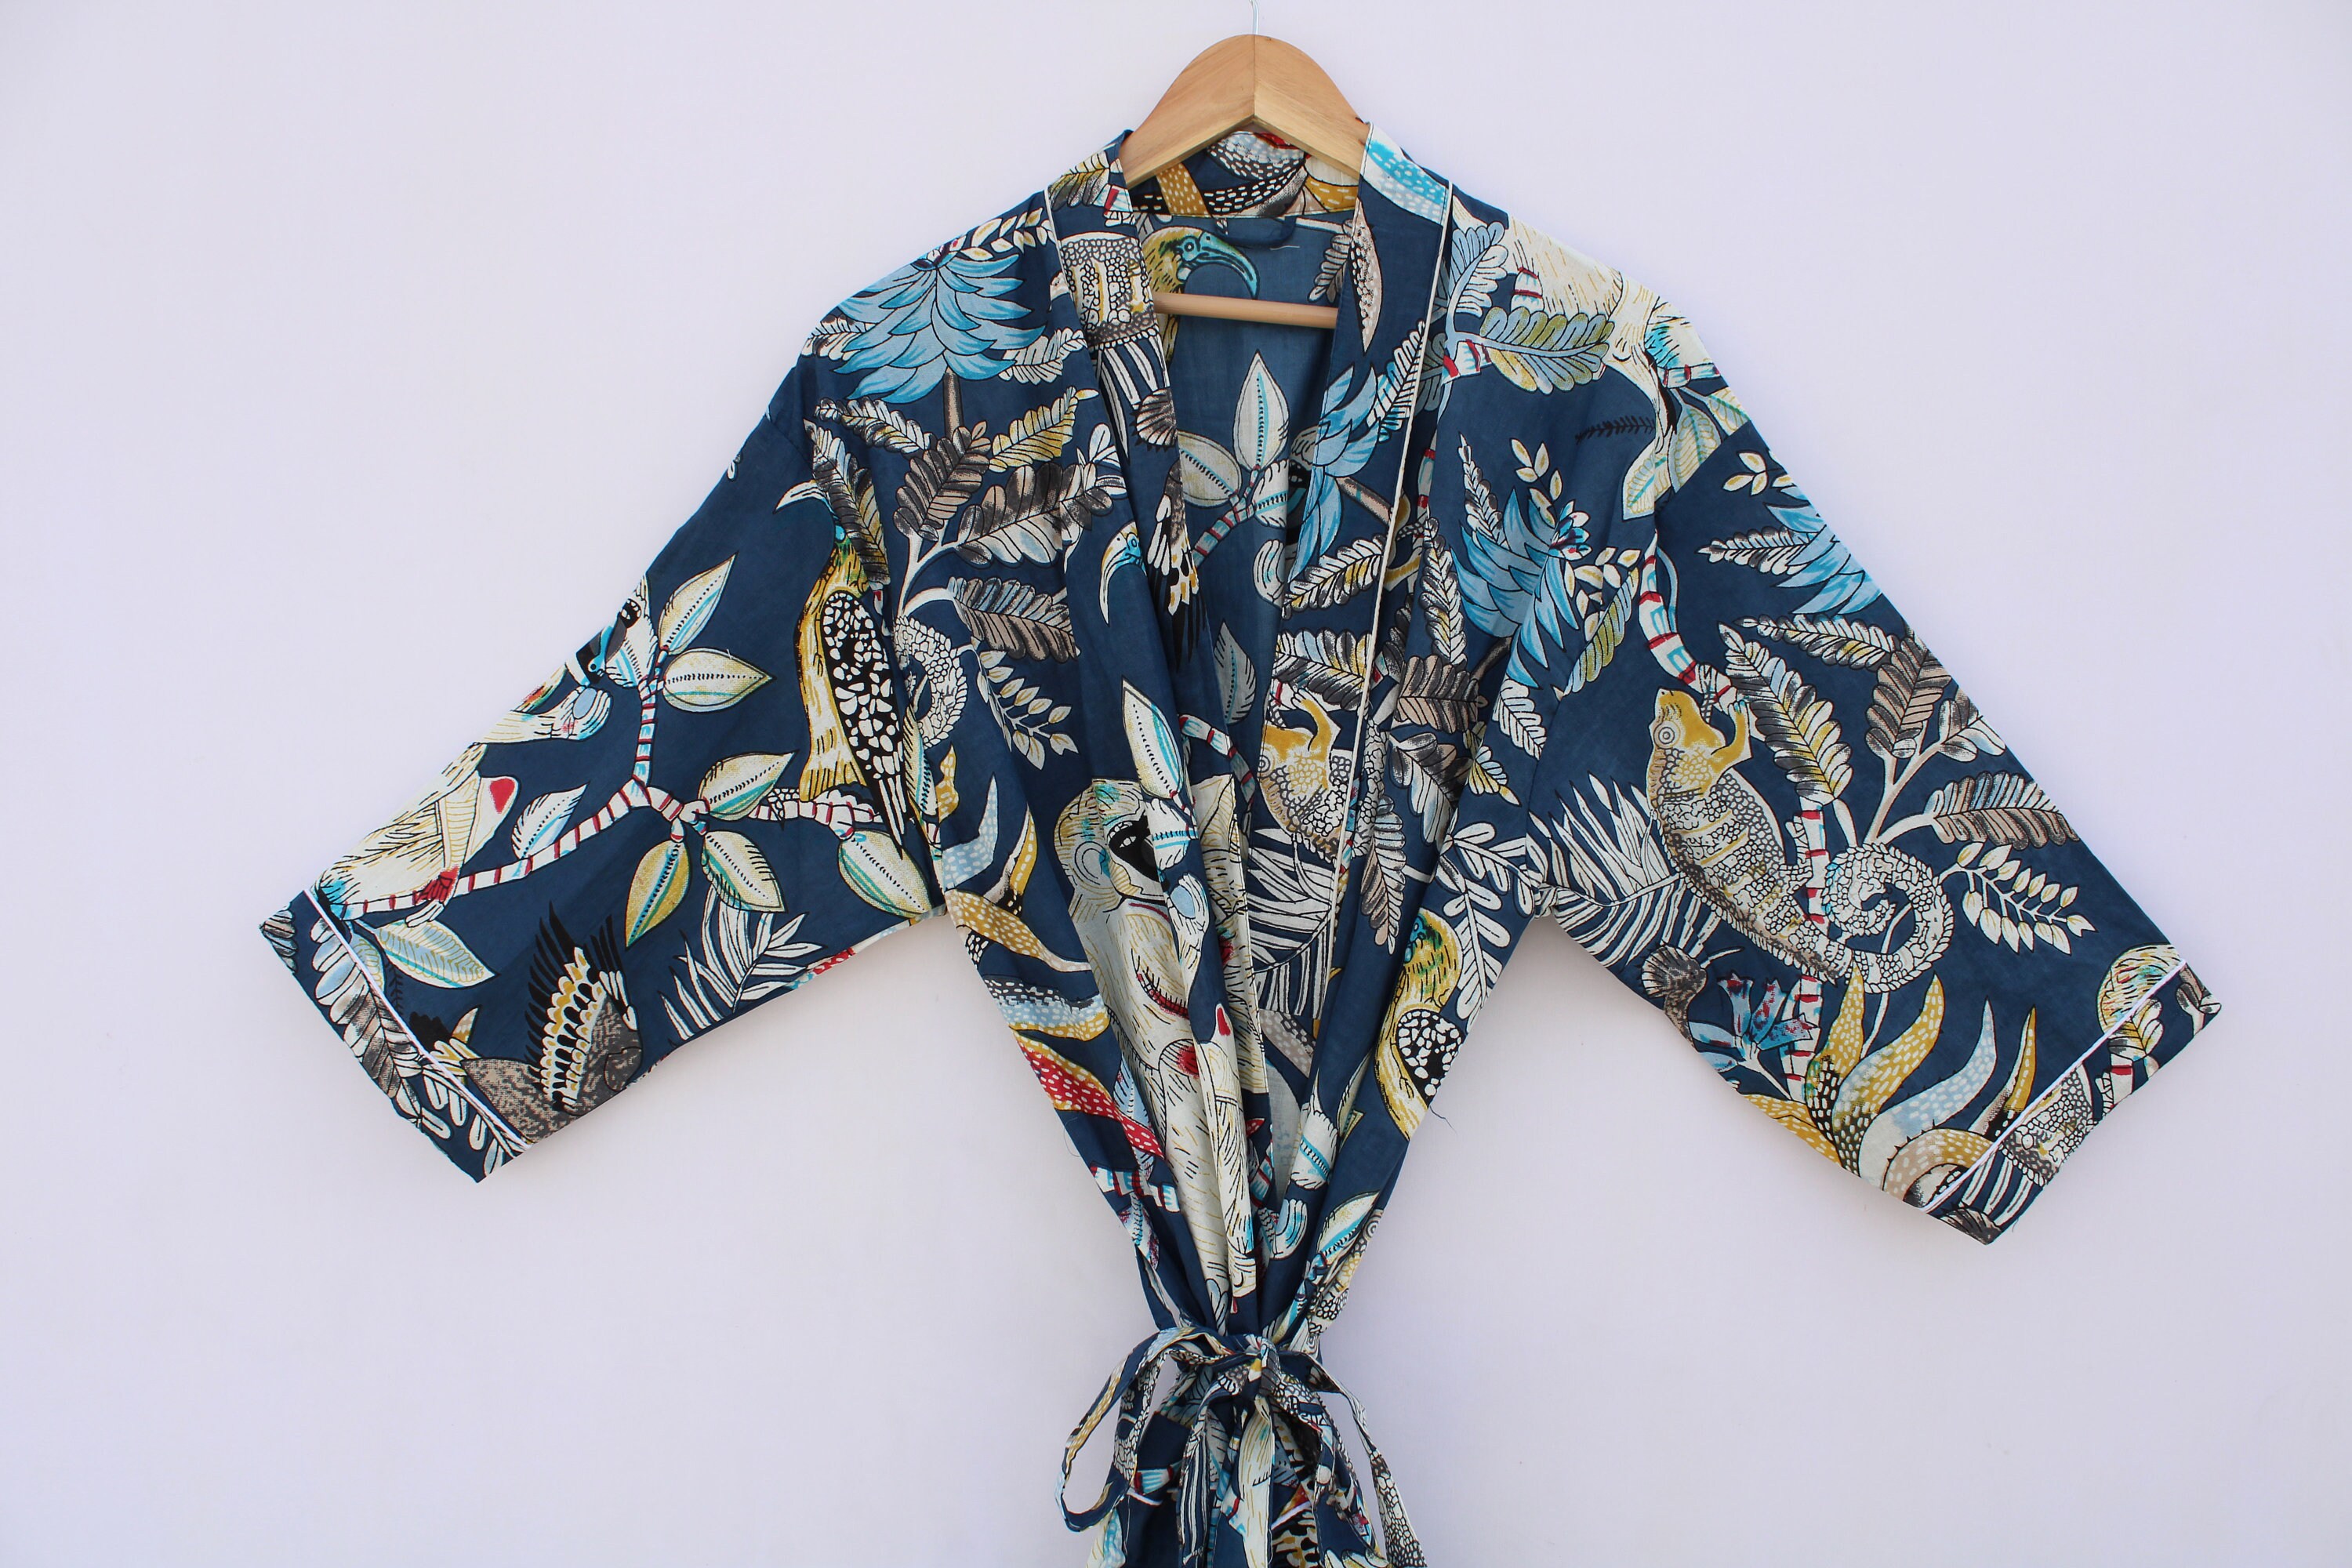 STRH Monkey print Kimono 100% Cotton kimono Indian Kimono | Etsy